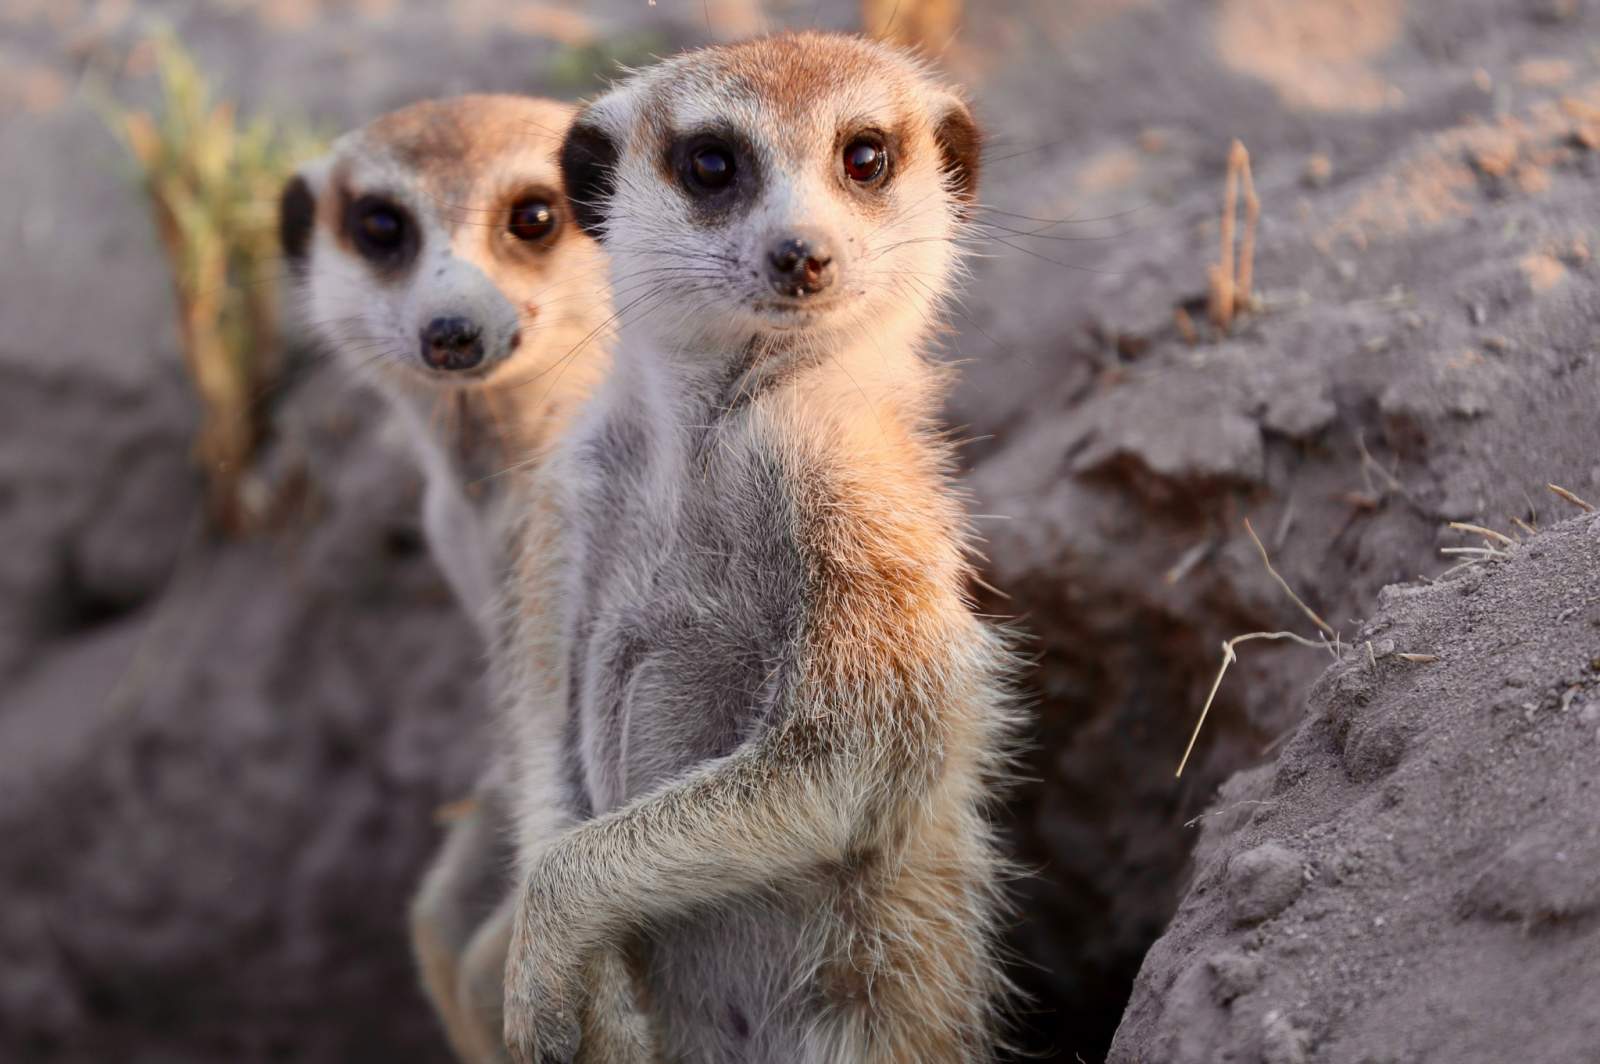 Two meerkats staring at camera